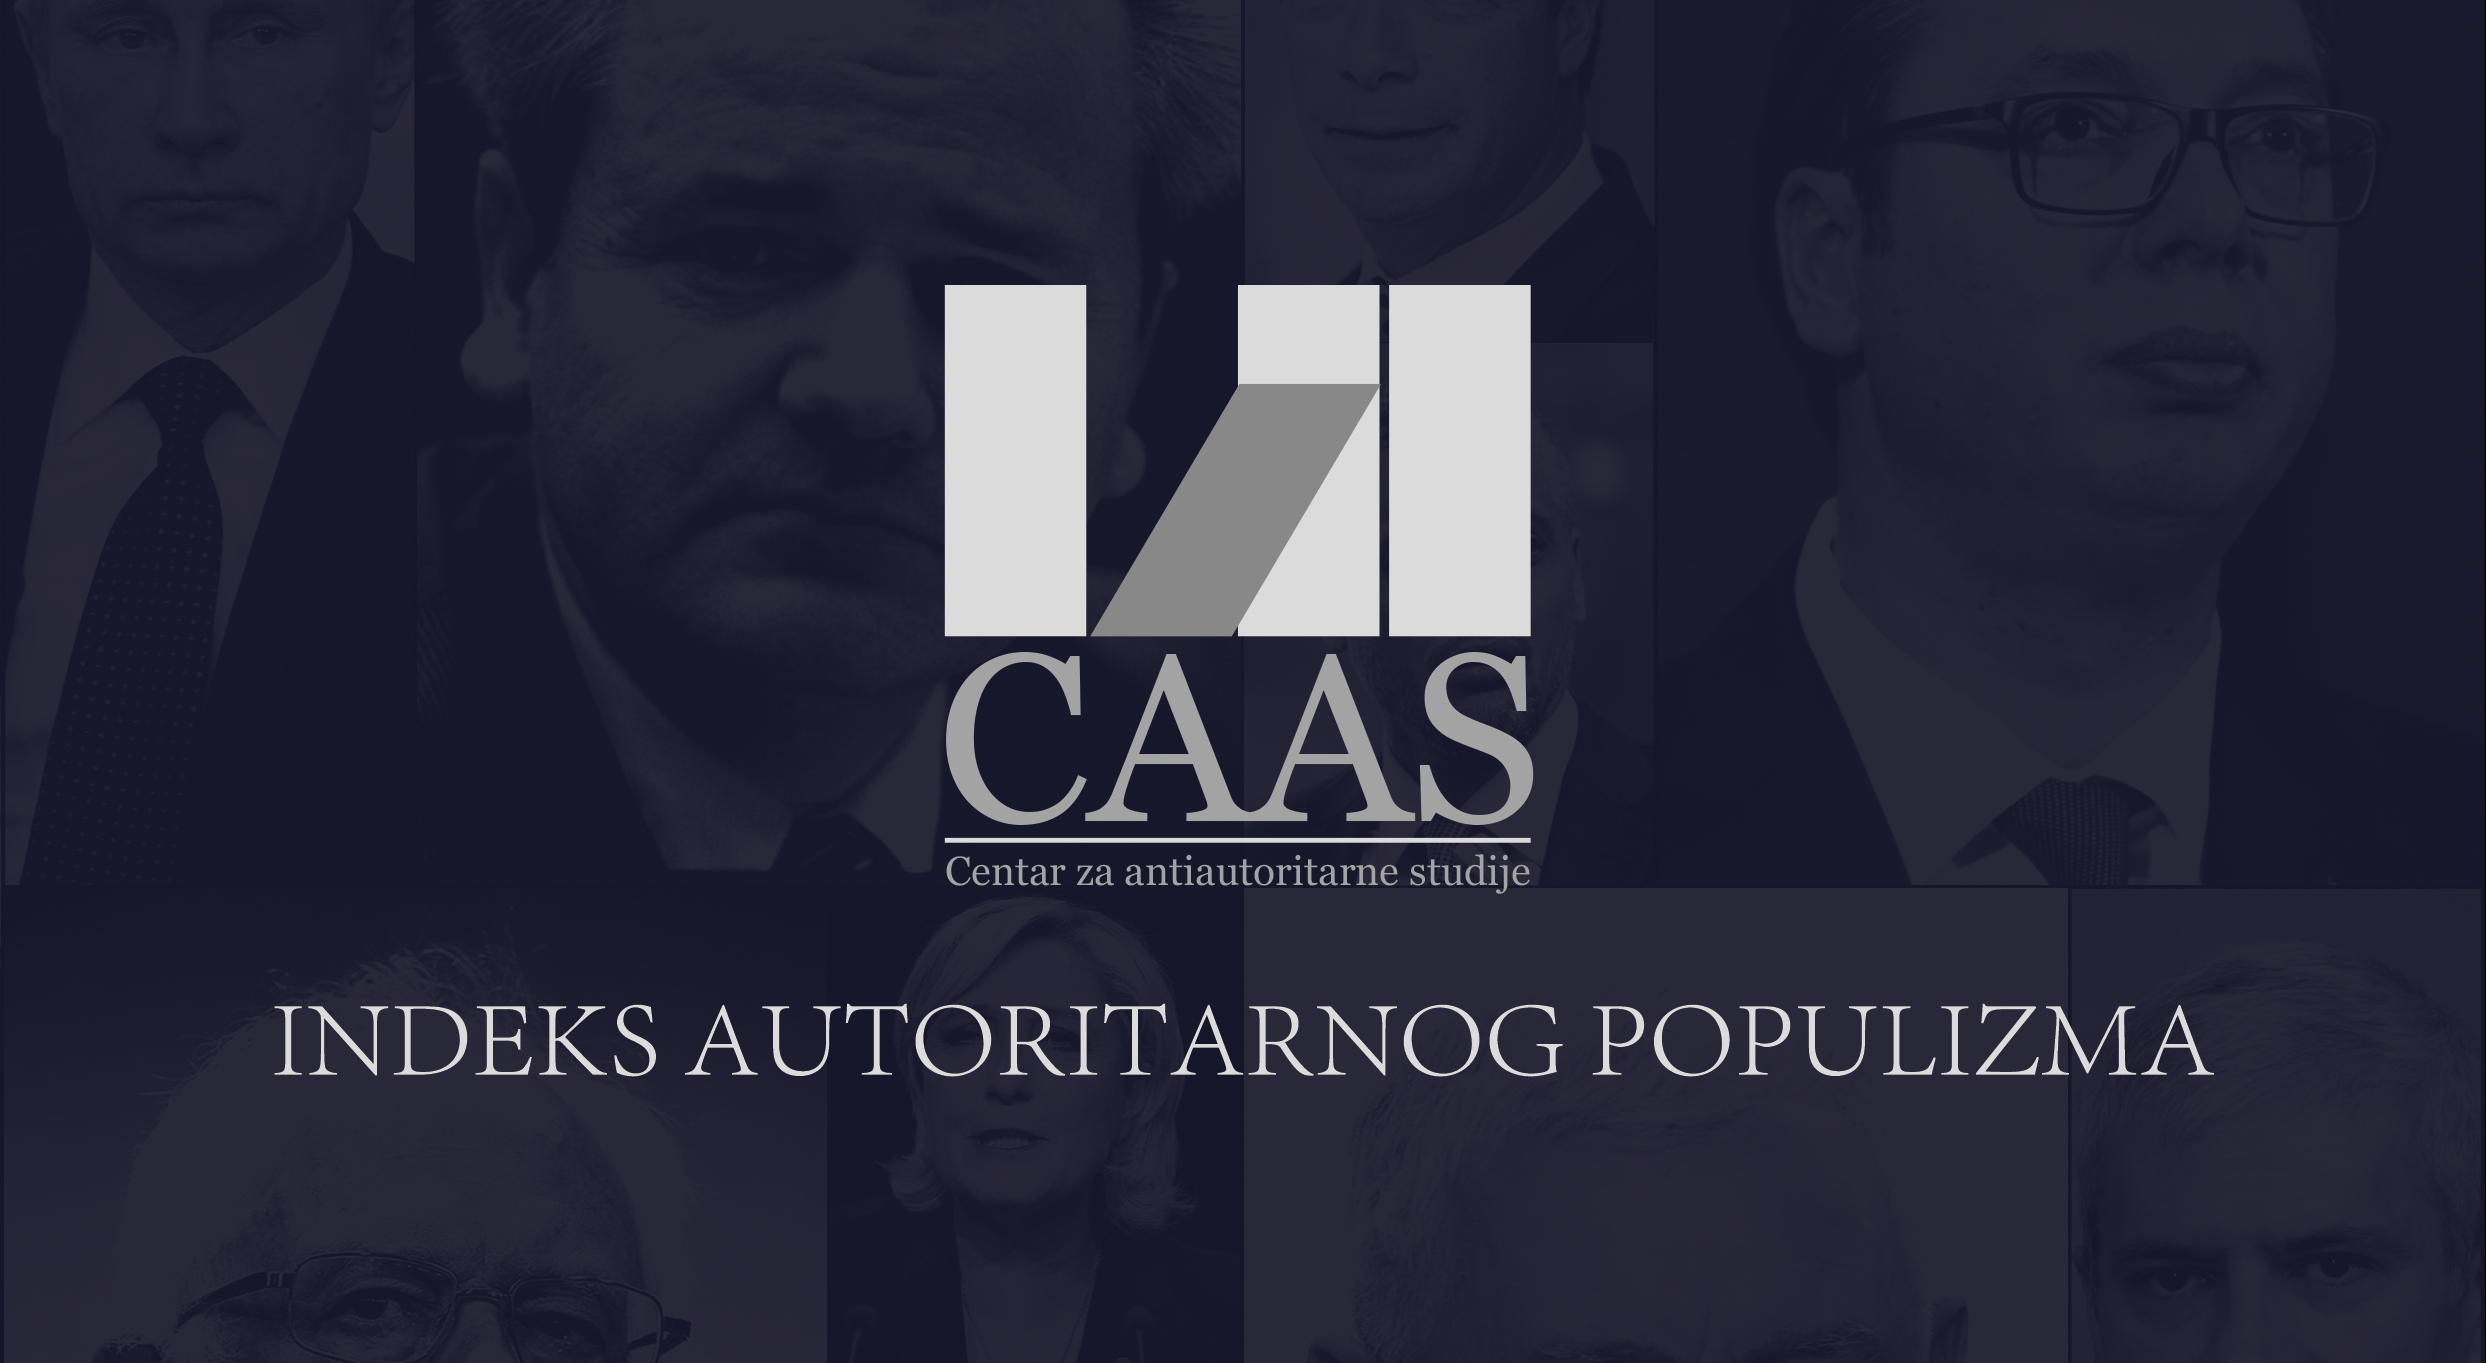 2017 – CAAS indeks autoritarnog populizma